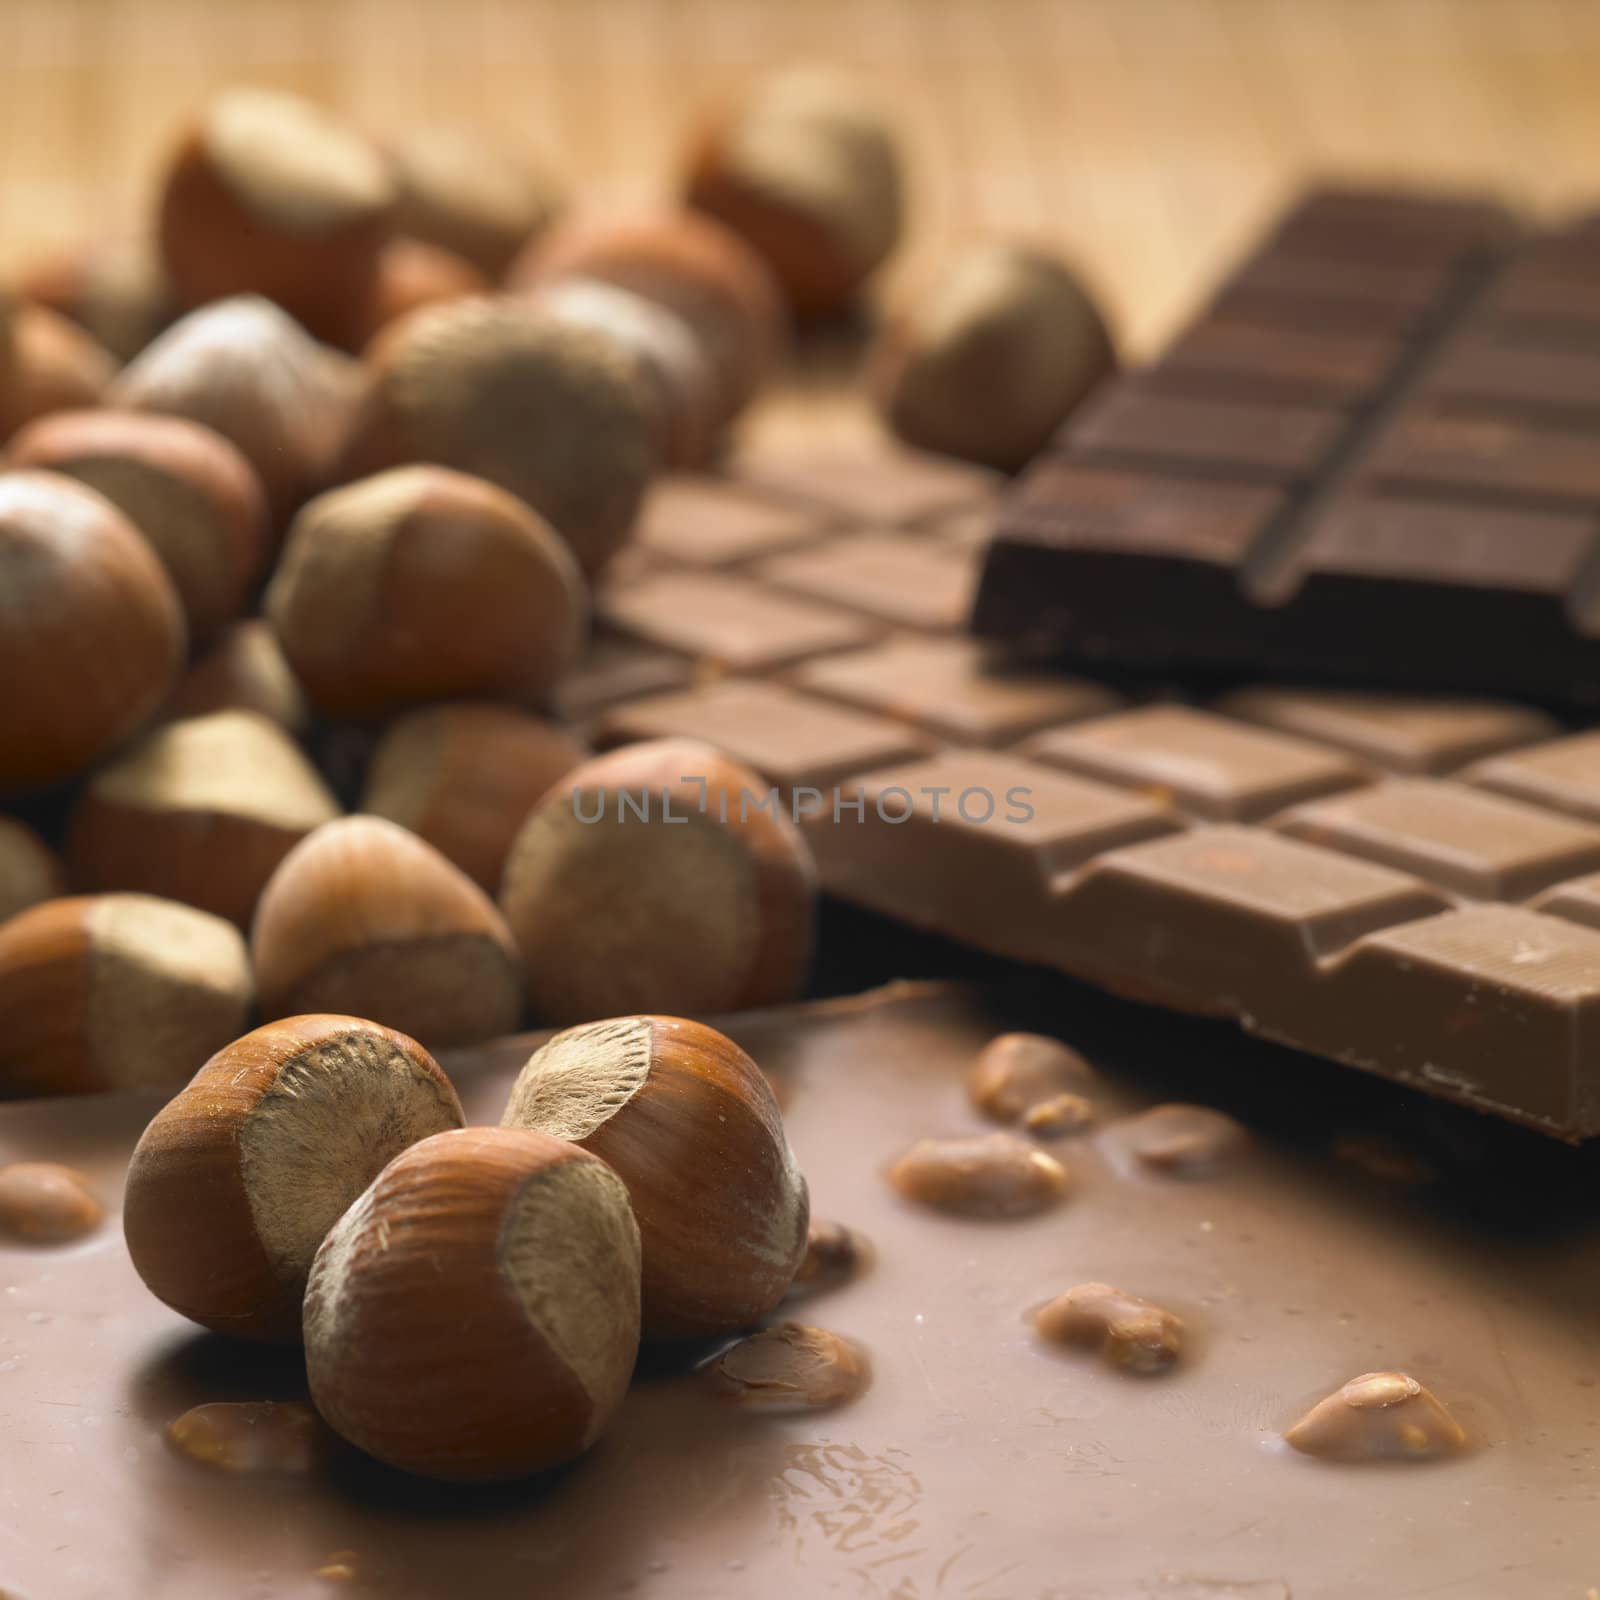 chocolate bars with hazelnuts by phbcz